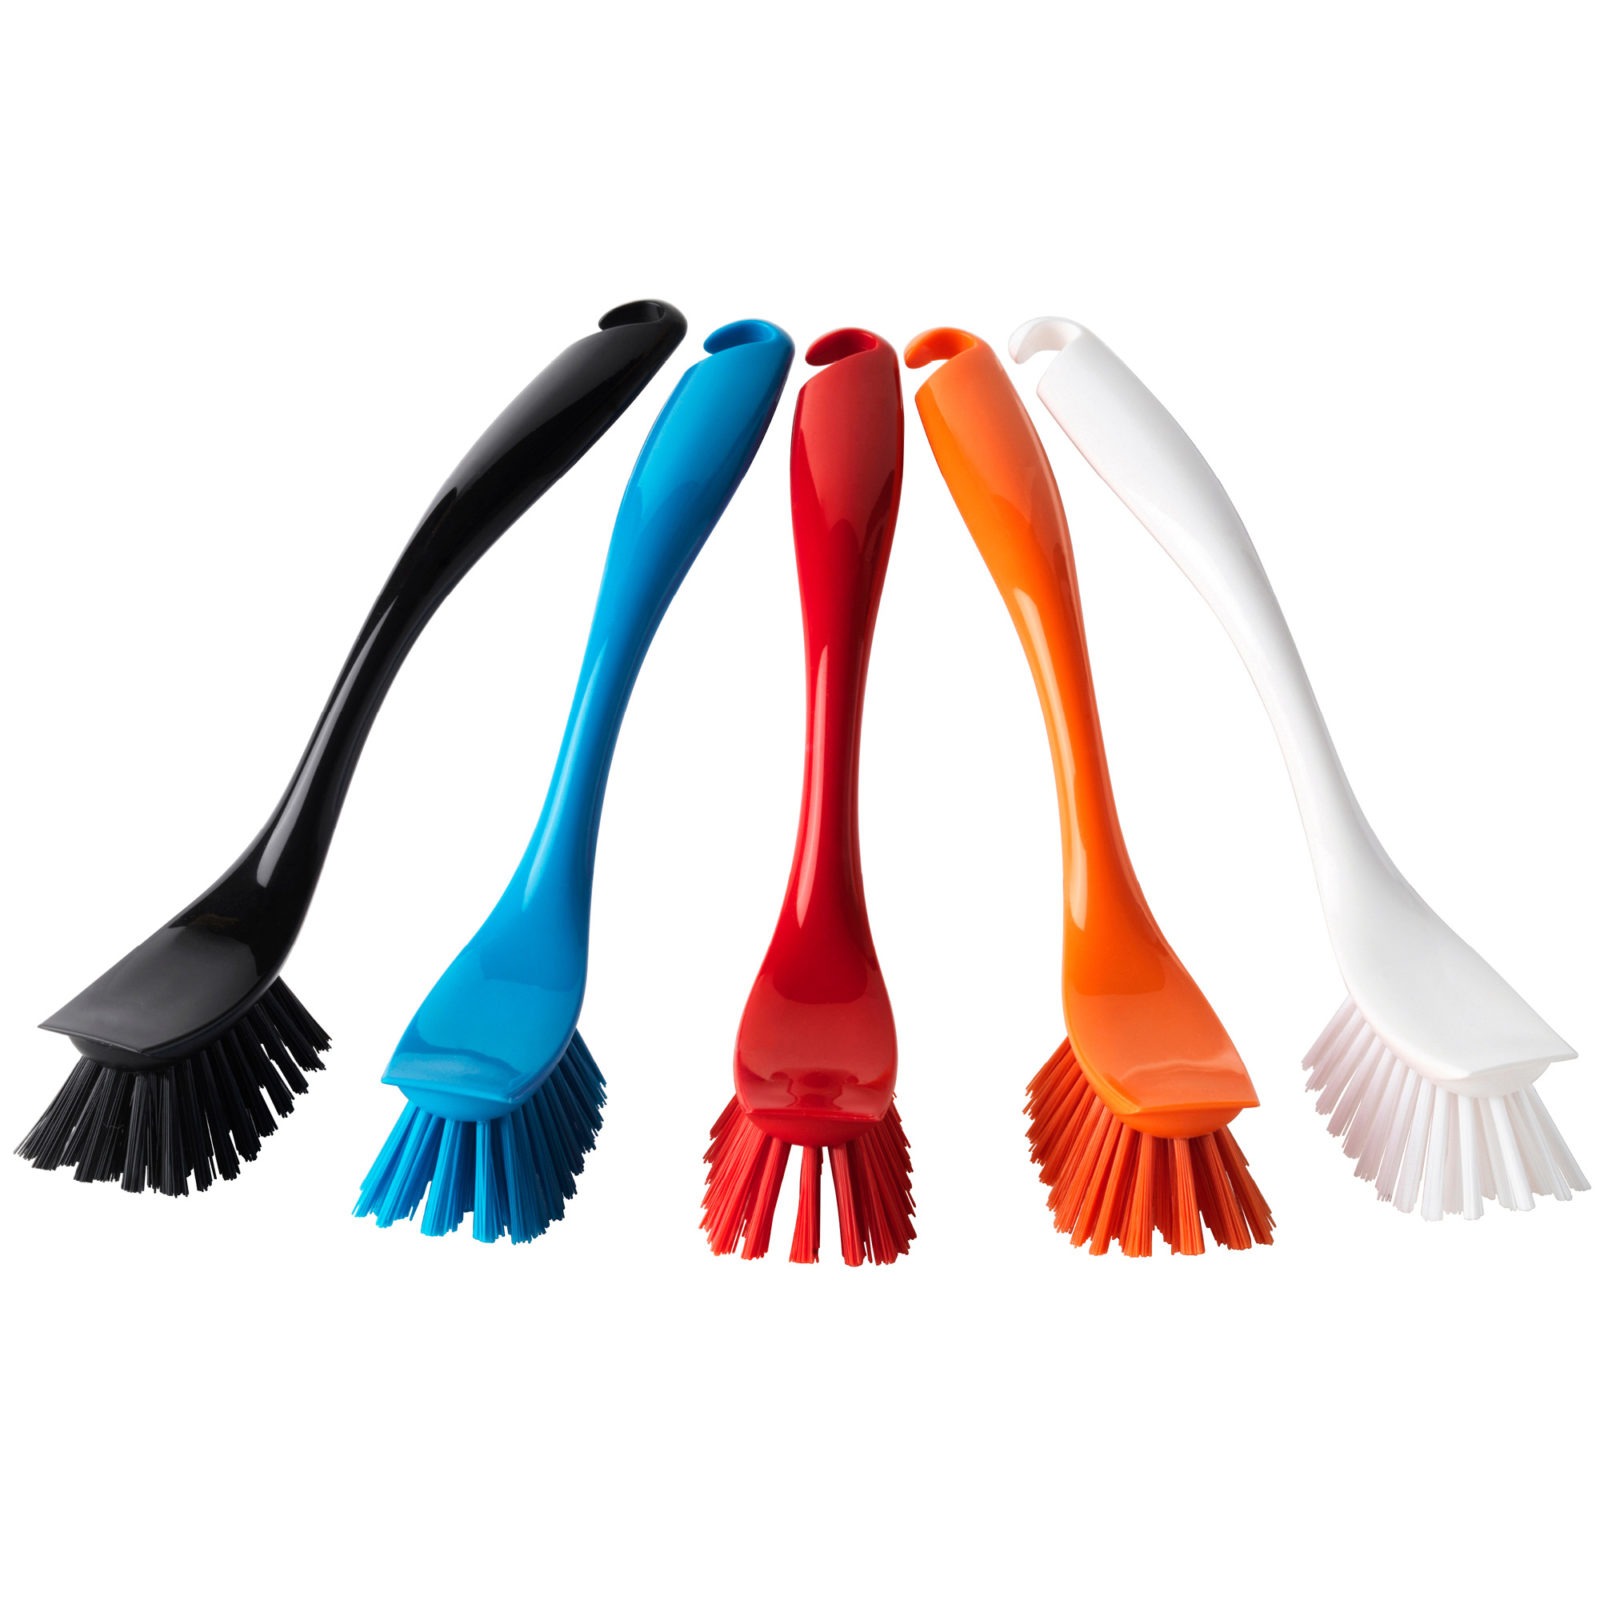 Cinco cepillos limpiavajillas en distintos colores: negro, azul, rojo, naranja y blanco.